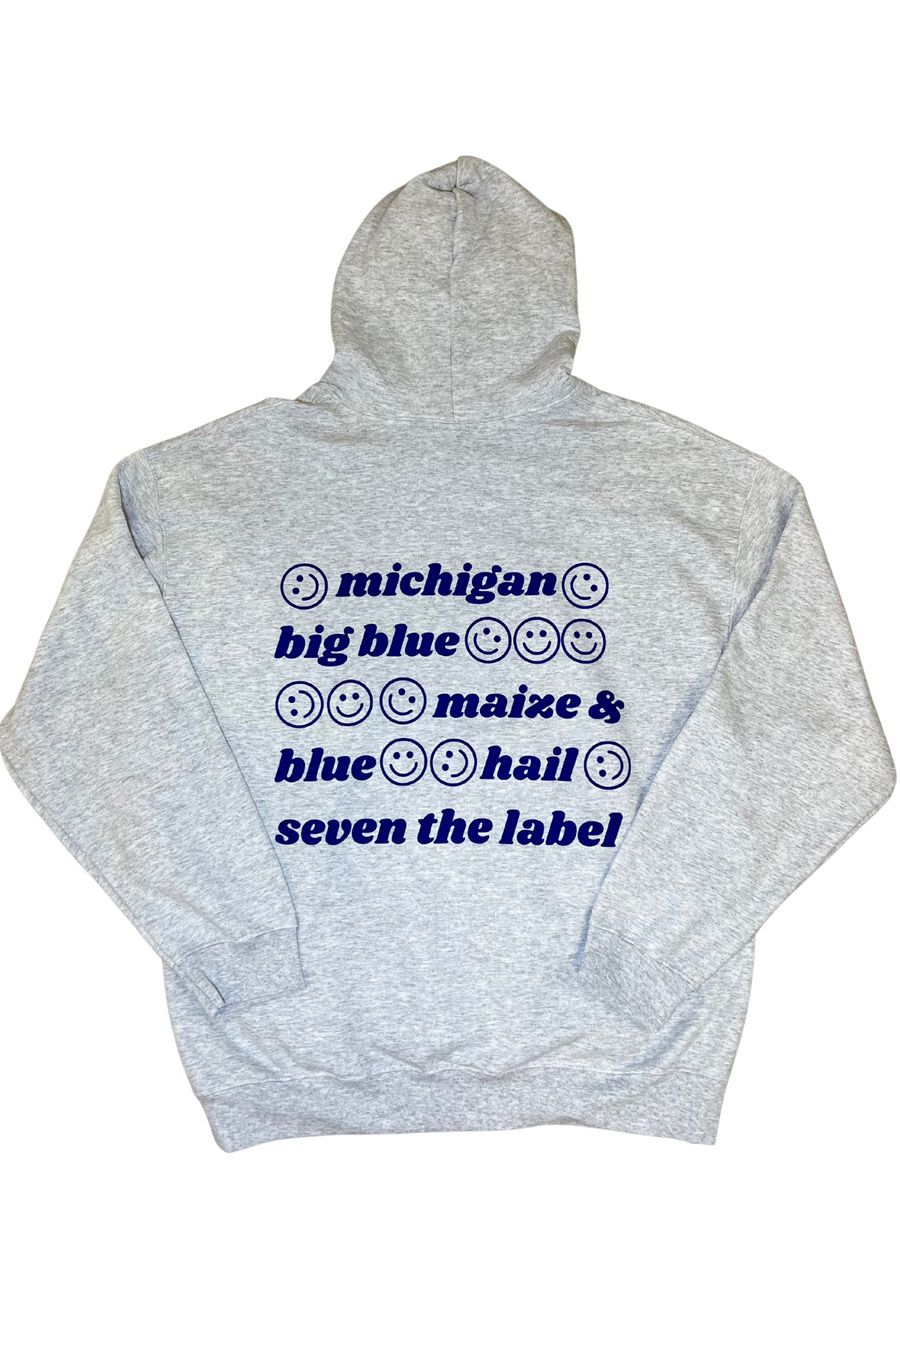 maize & blue hoodie